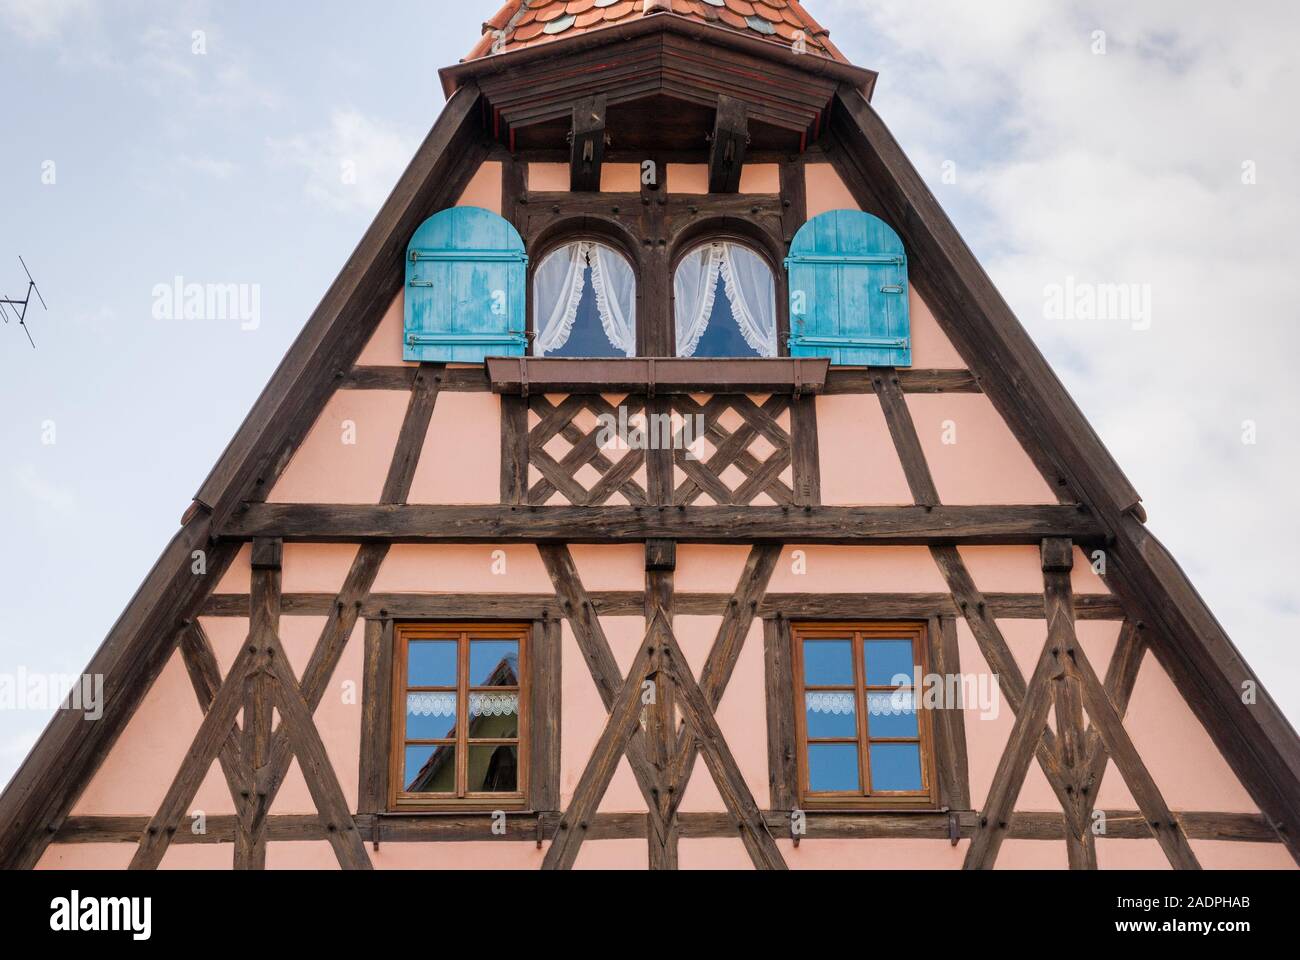 Gibeldetail an einem Fachwerkhaus in Rothenburg ob der Tauber, Bayern, Deutschland Stock Photo